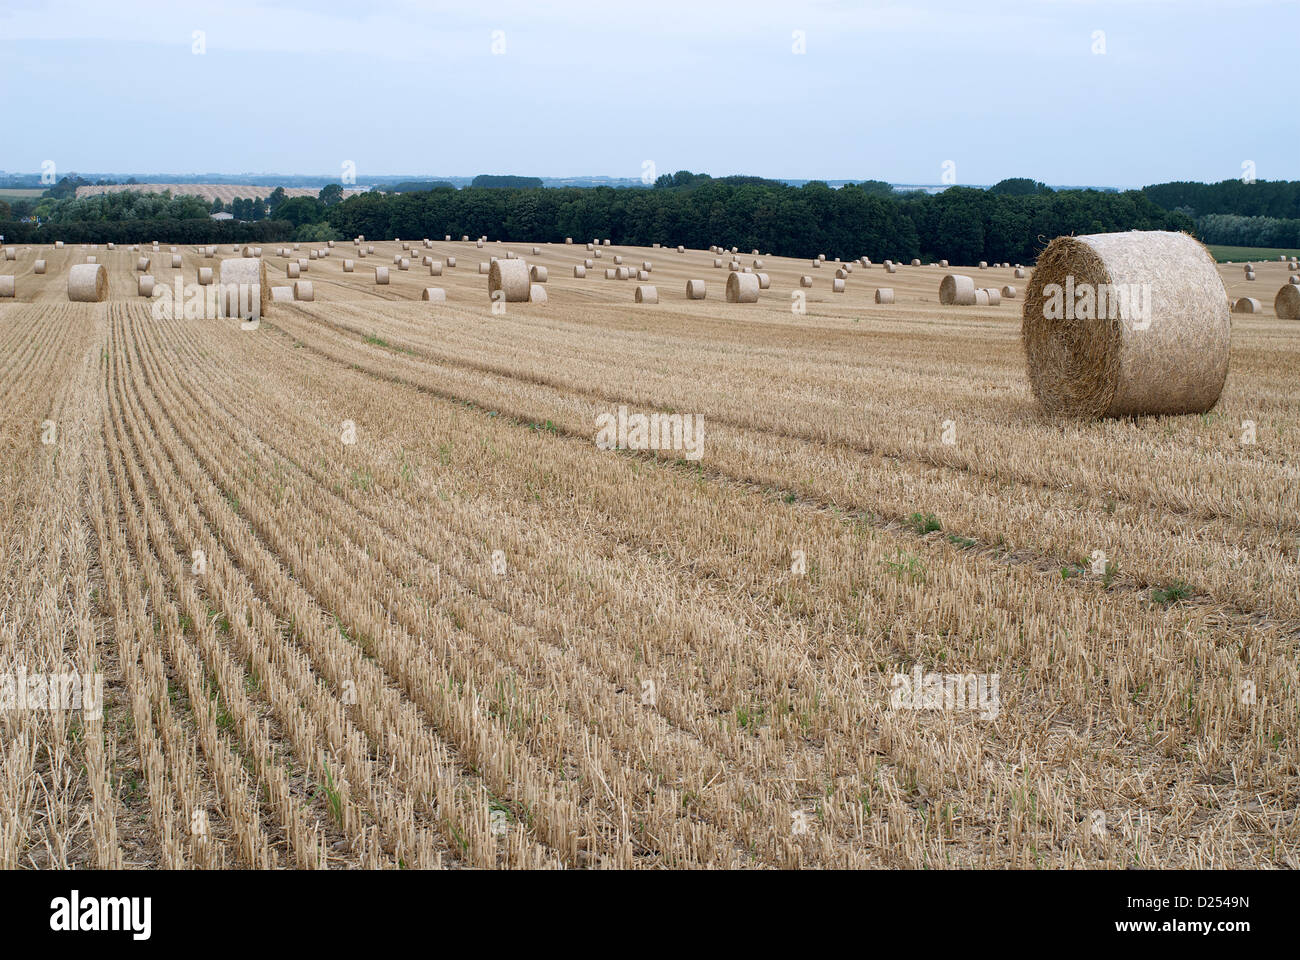 Manderow, Allemagne, champ de blé récoltés avec des bottes de paille Banque D'Images